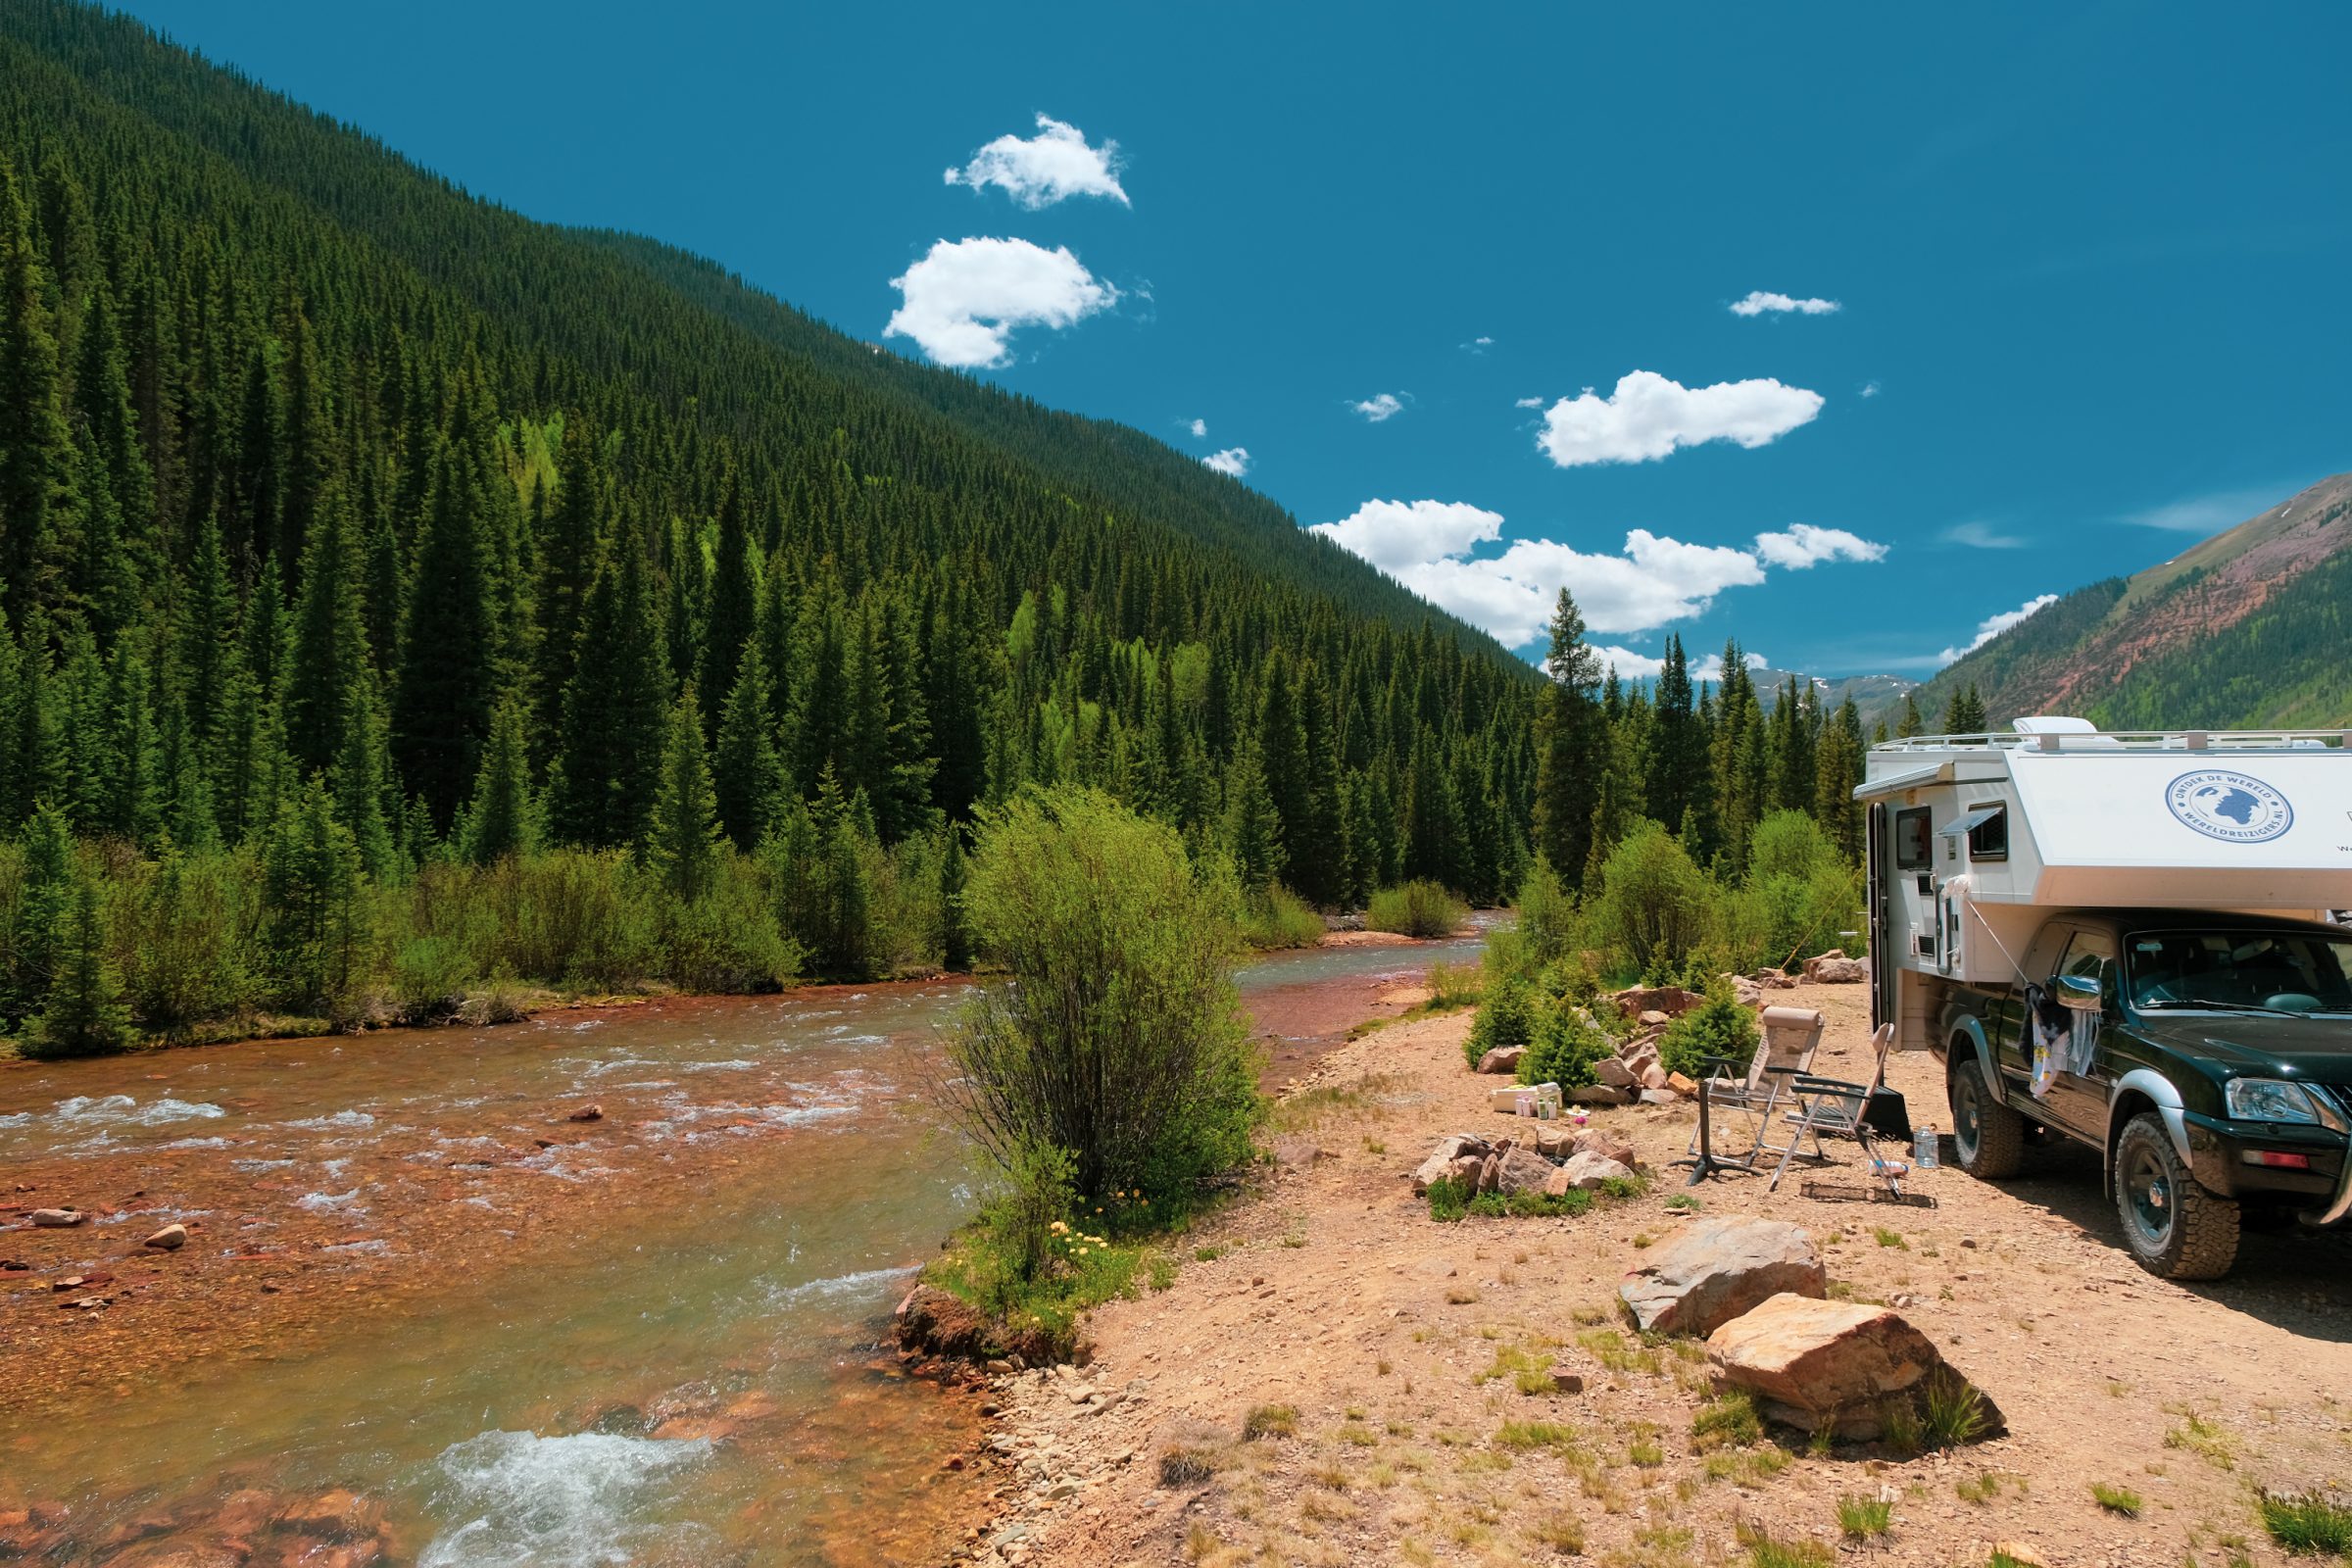 Wildkamperen bij Silverton Colorado | 100 dagen leven in een camper